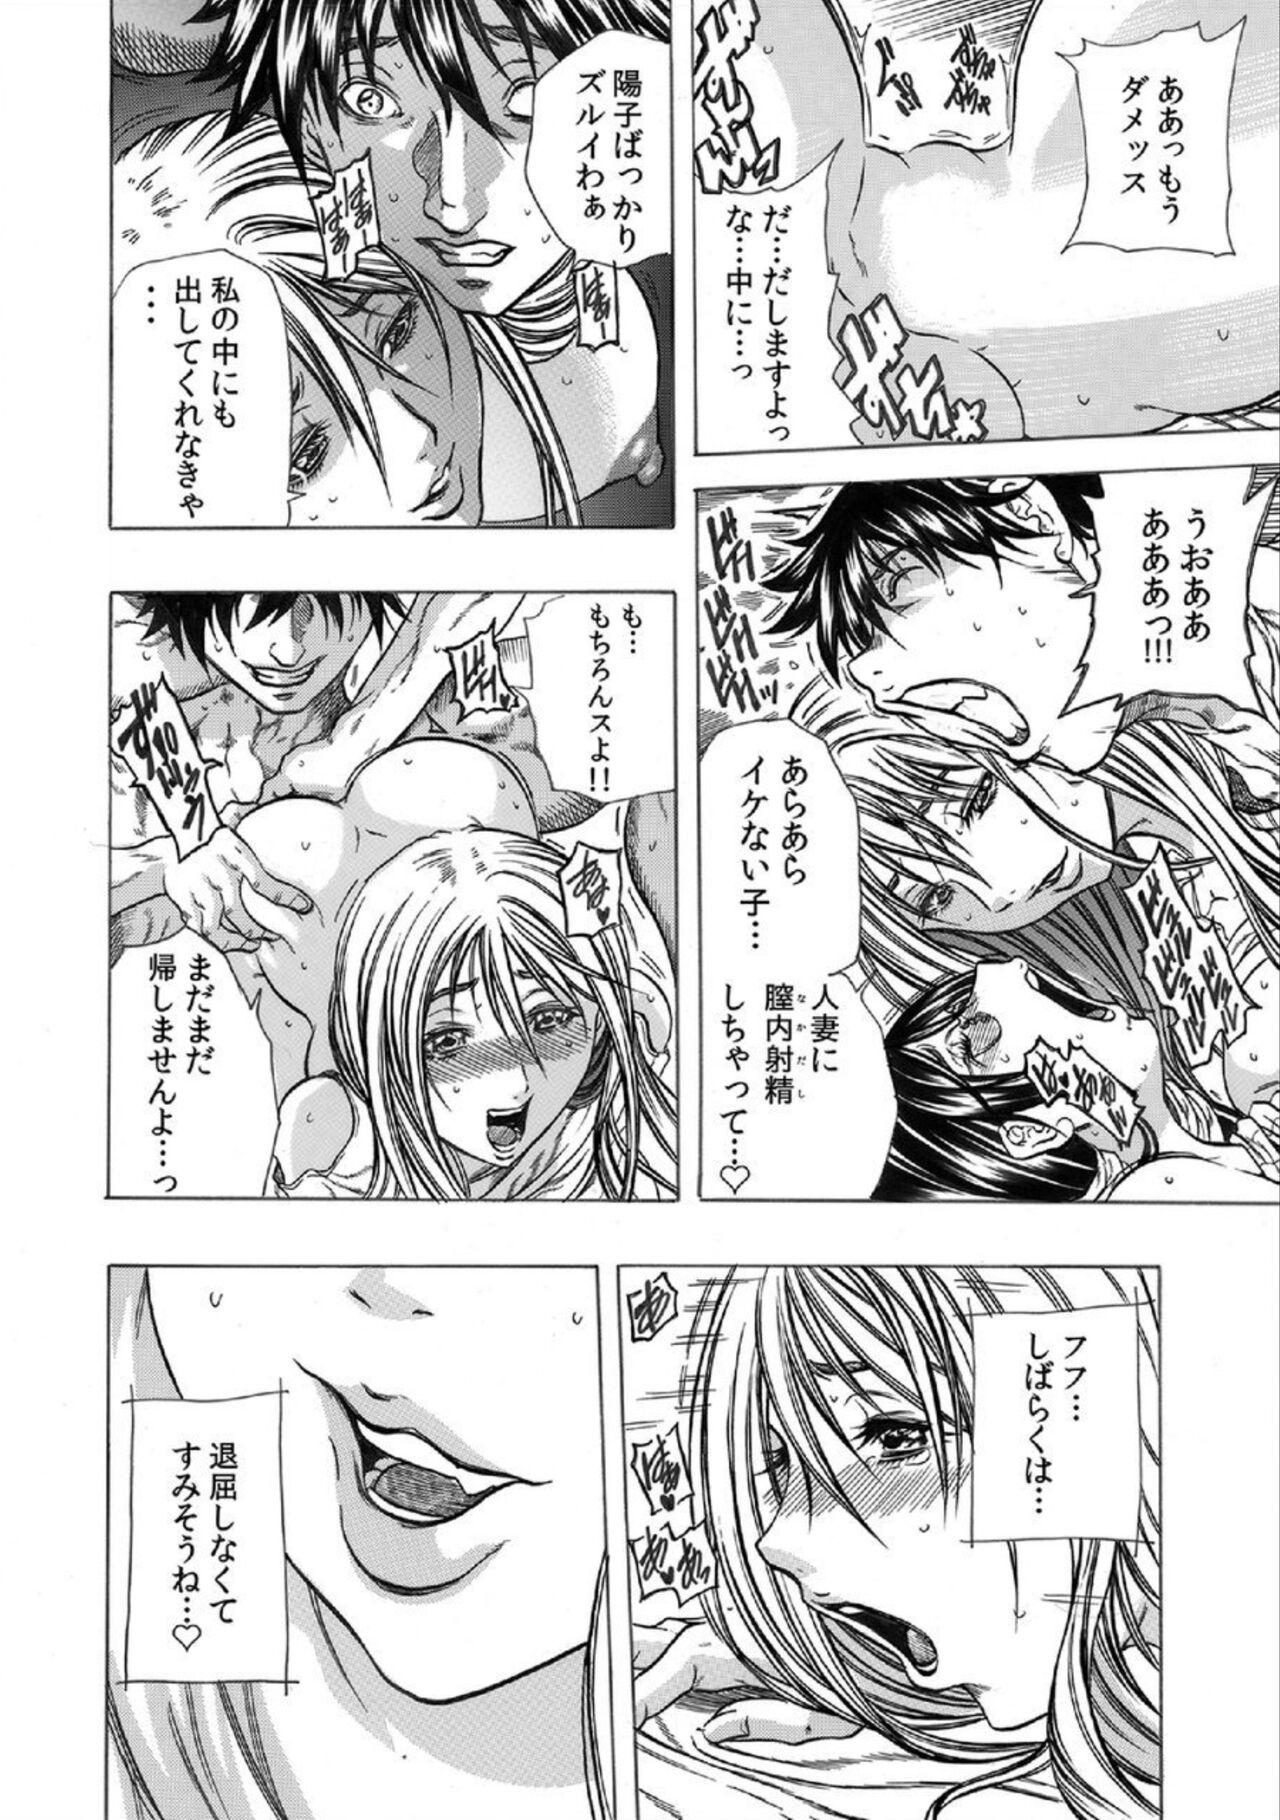 Masturbation Tonarinookusan O Kachiku Ni Suru 13 No Hōhō 1 Maledom - Page 11